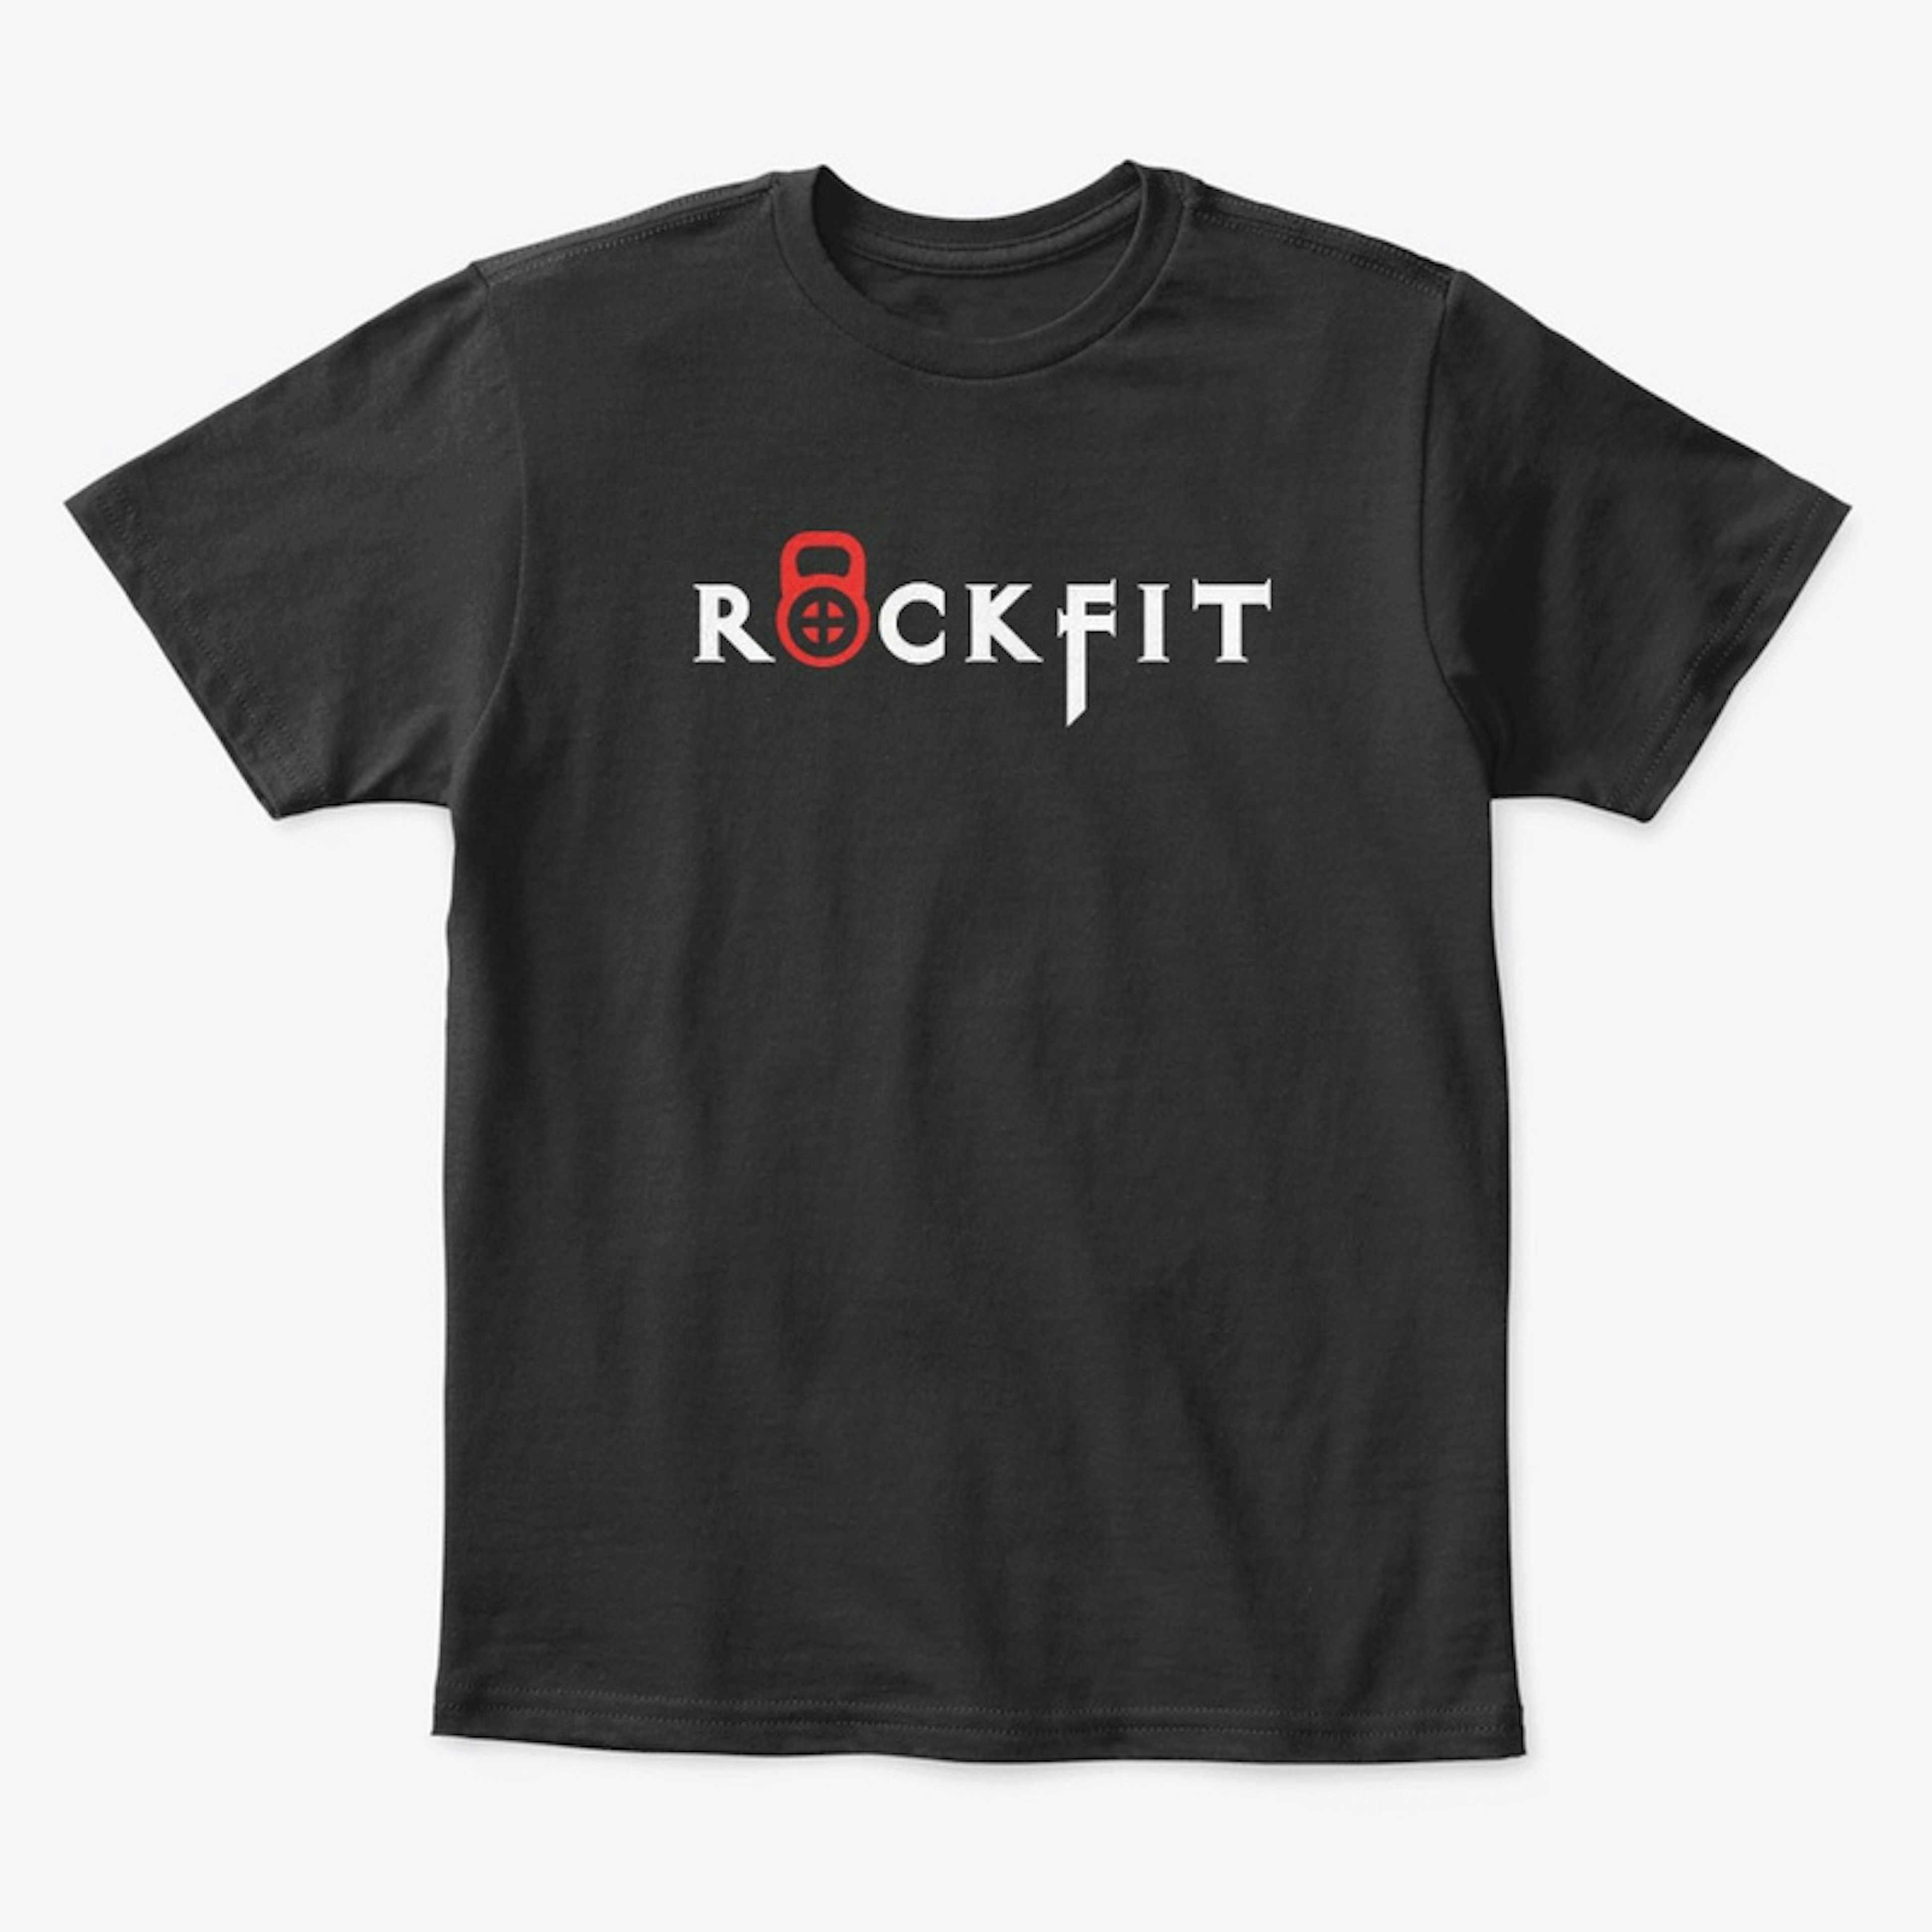 Rockfit Kid's Black Shirt